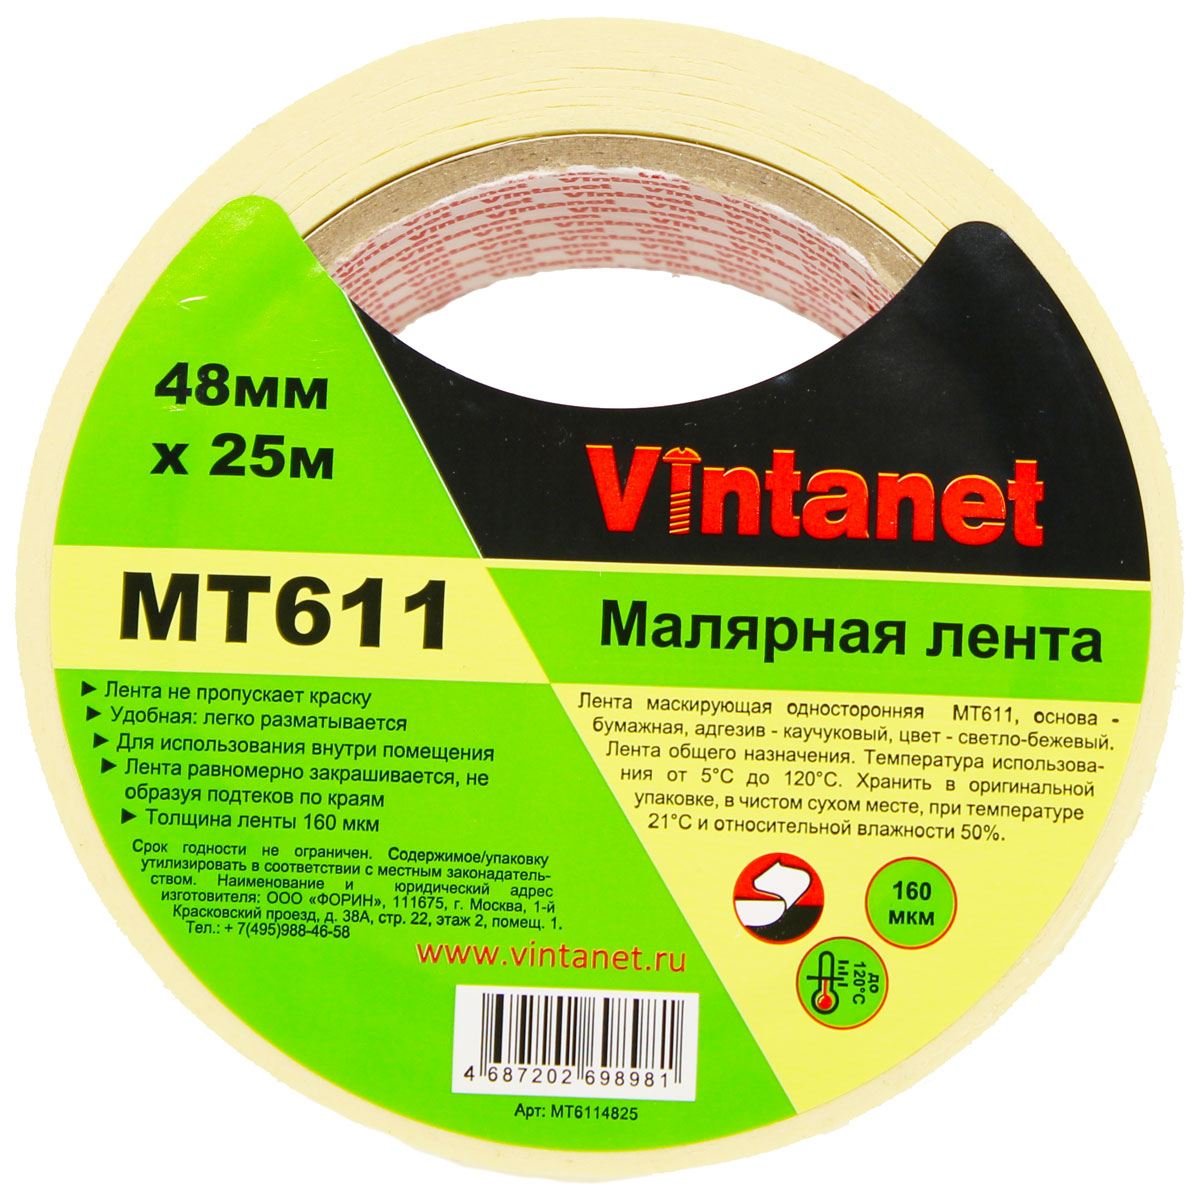 Лента малярная высокотемпературная Vintanet MT611, 120 С, 160 мкм, 48мм х 25м, MT6114825 малярная креппированная клейкая лента staff